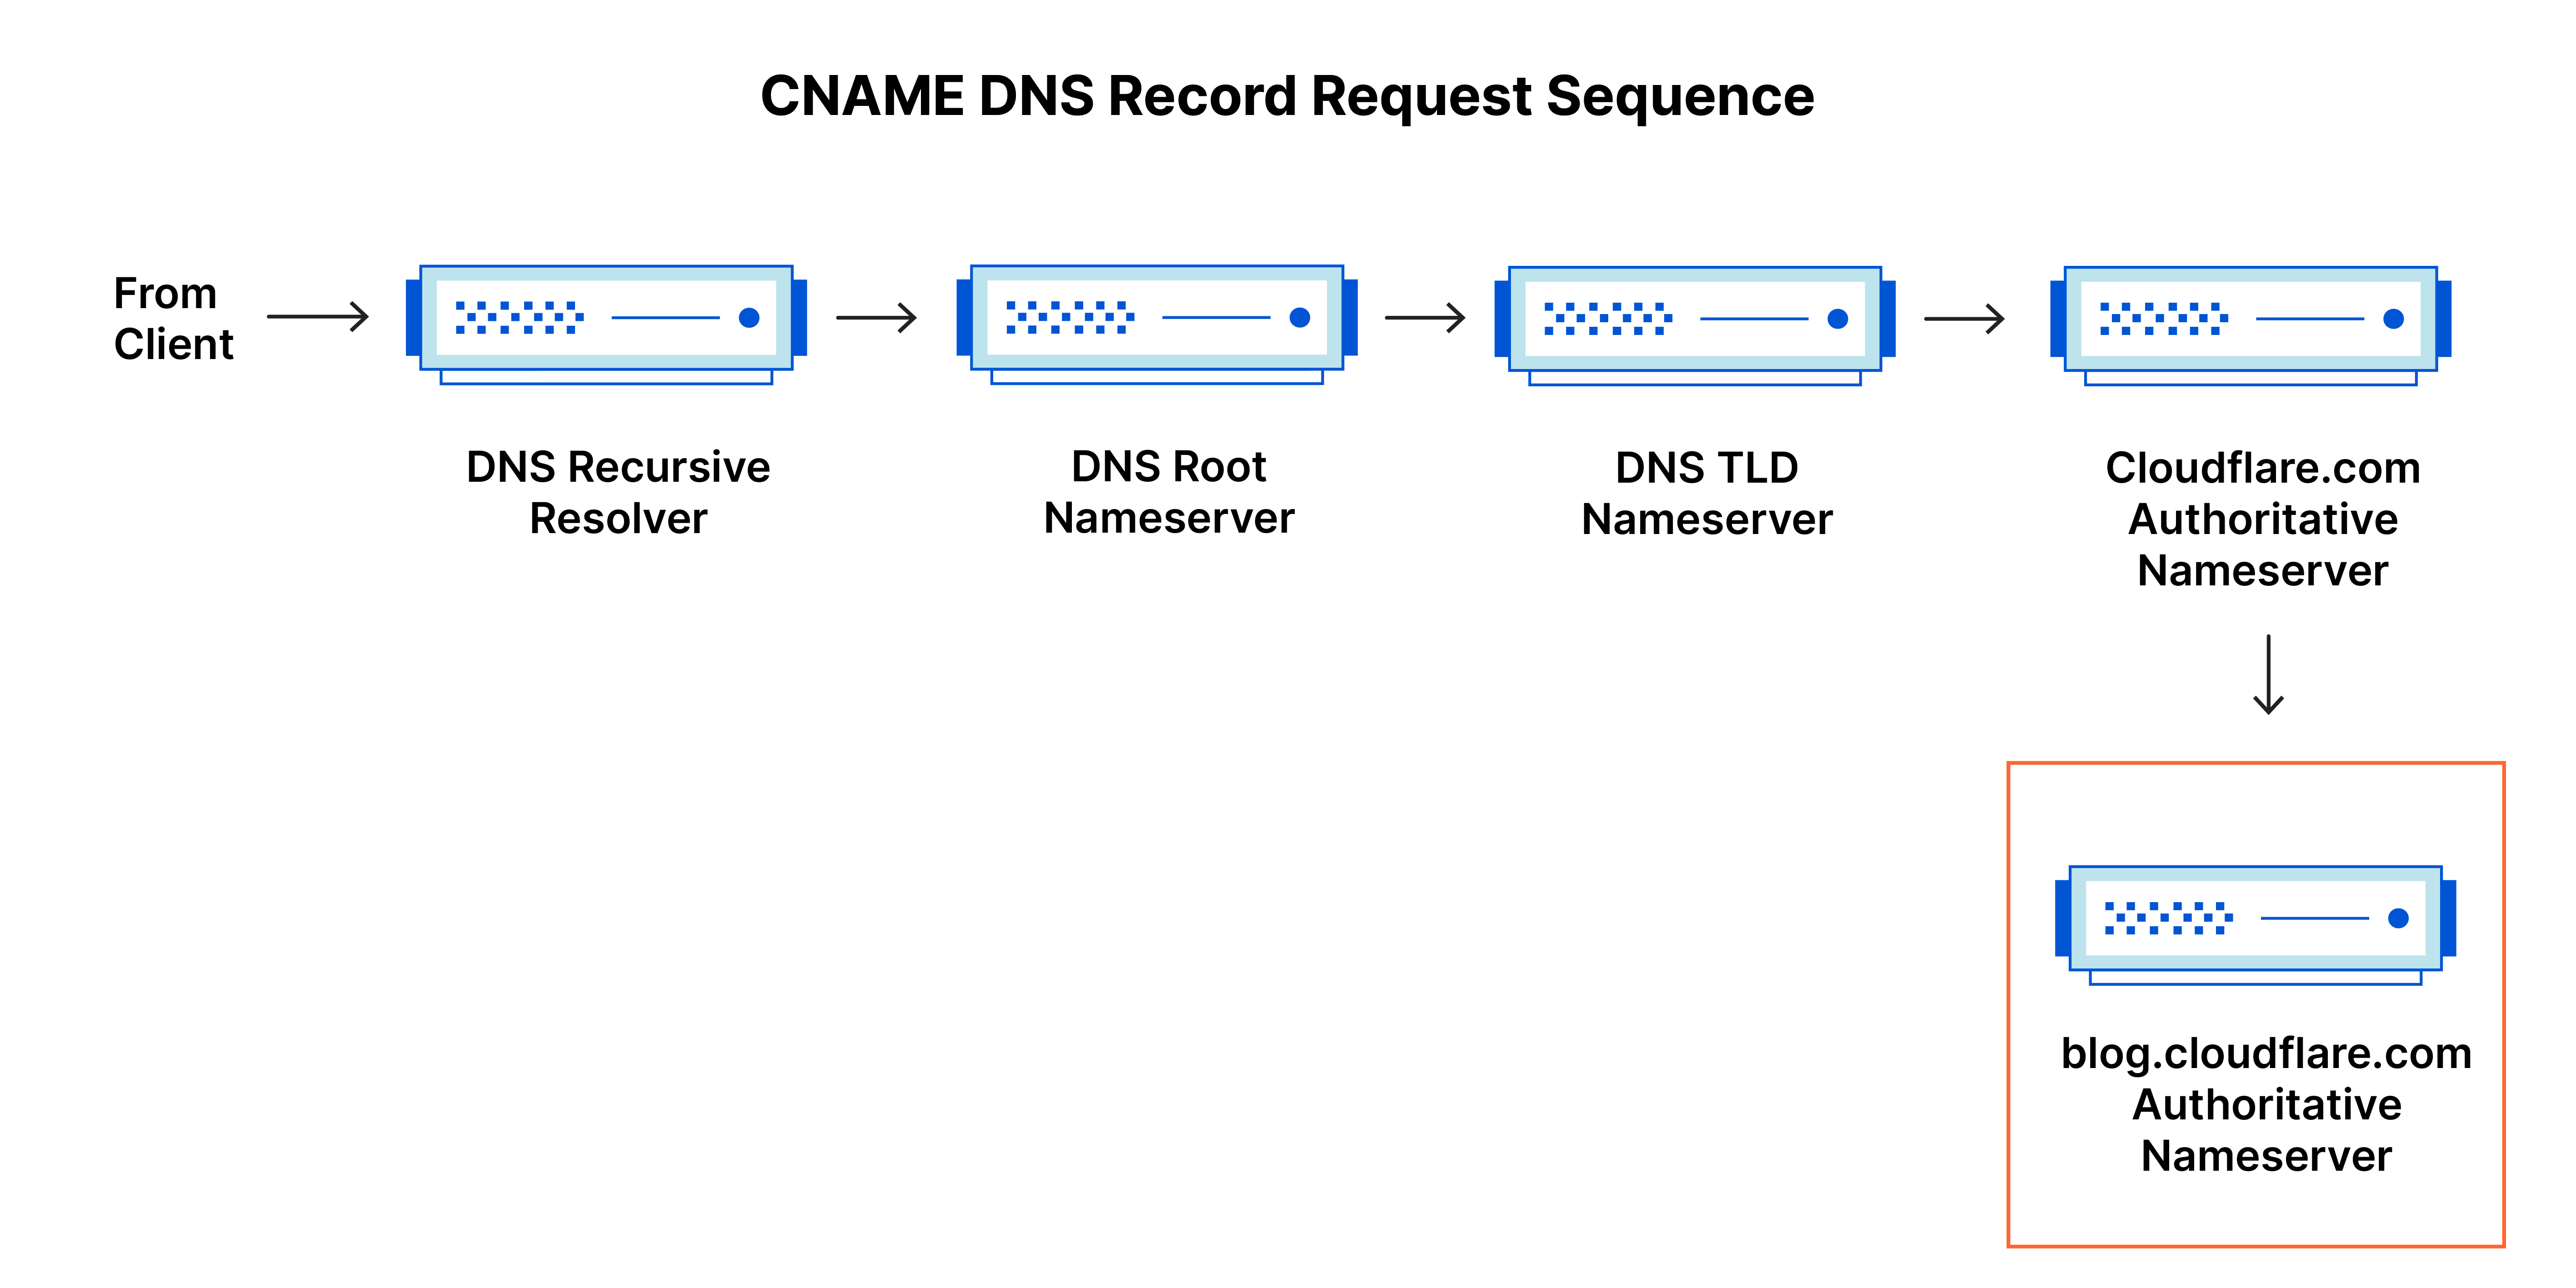 Secuencia de solicitud de registro DNS: consulta DNS al registro CNAME para el subdominio blog.cloudflare.com